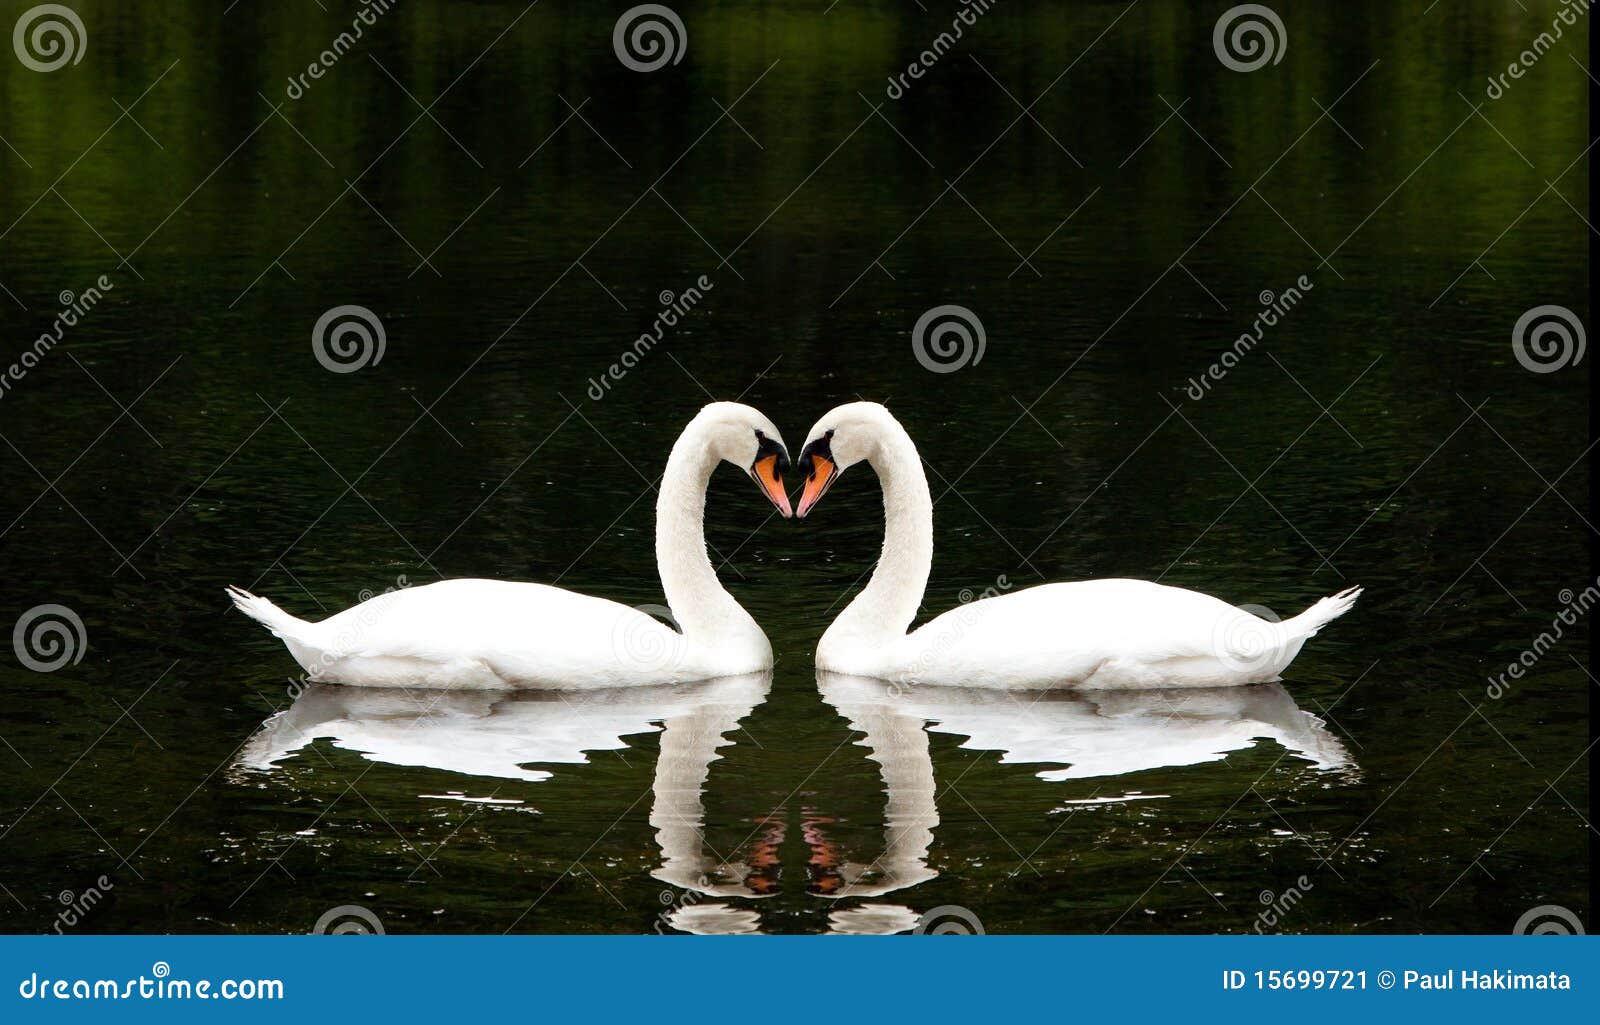 romantic swans